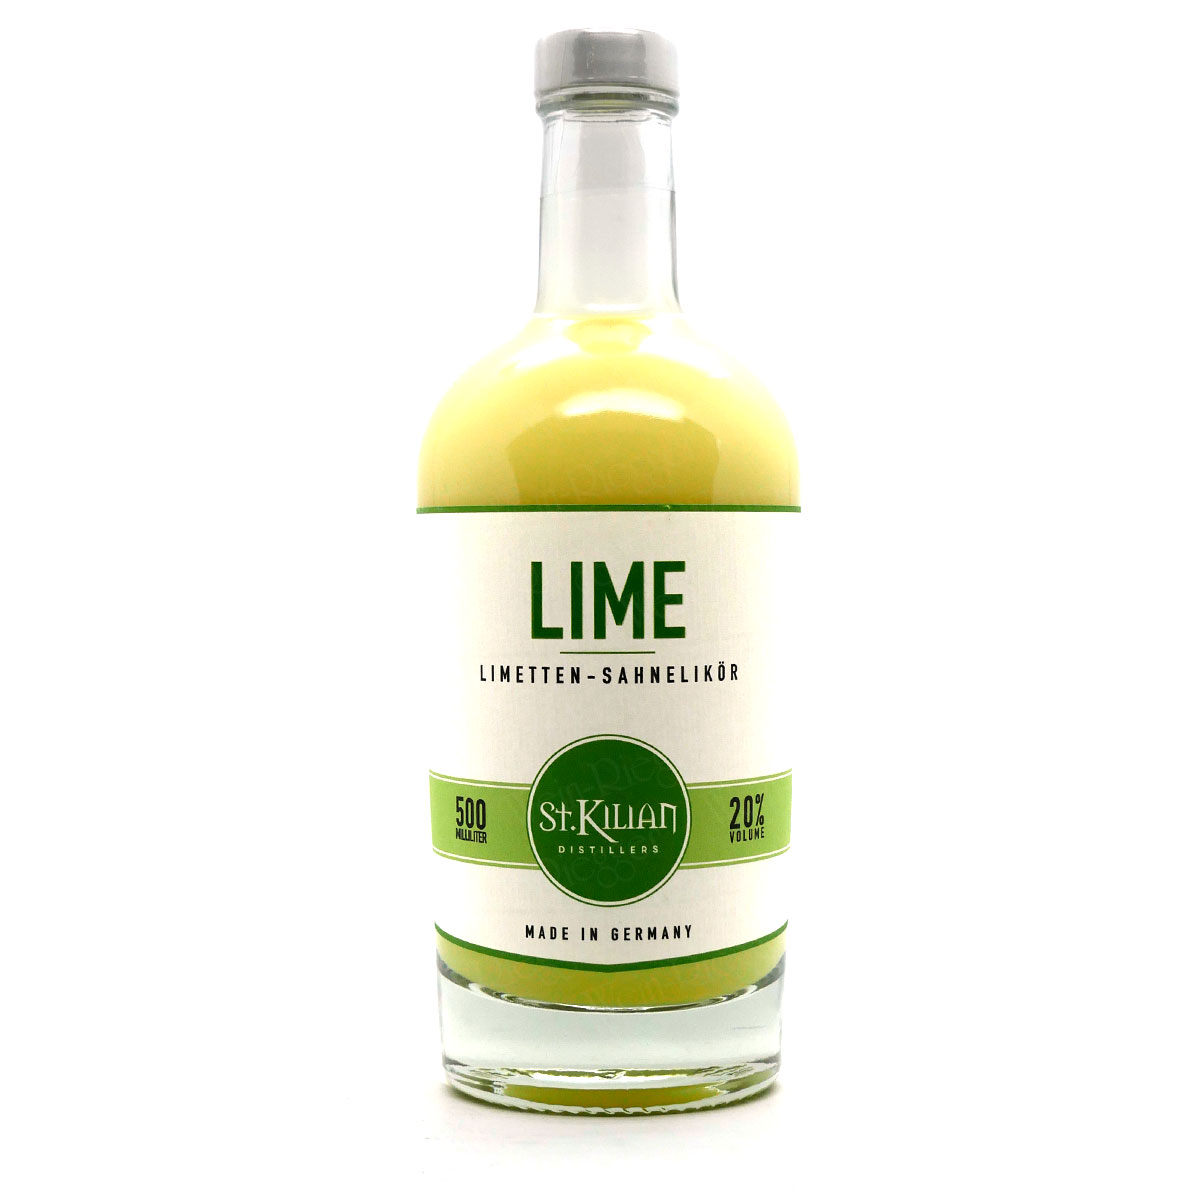 St. Kilian Lime - Limetten-Sahnelikör